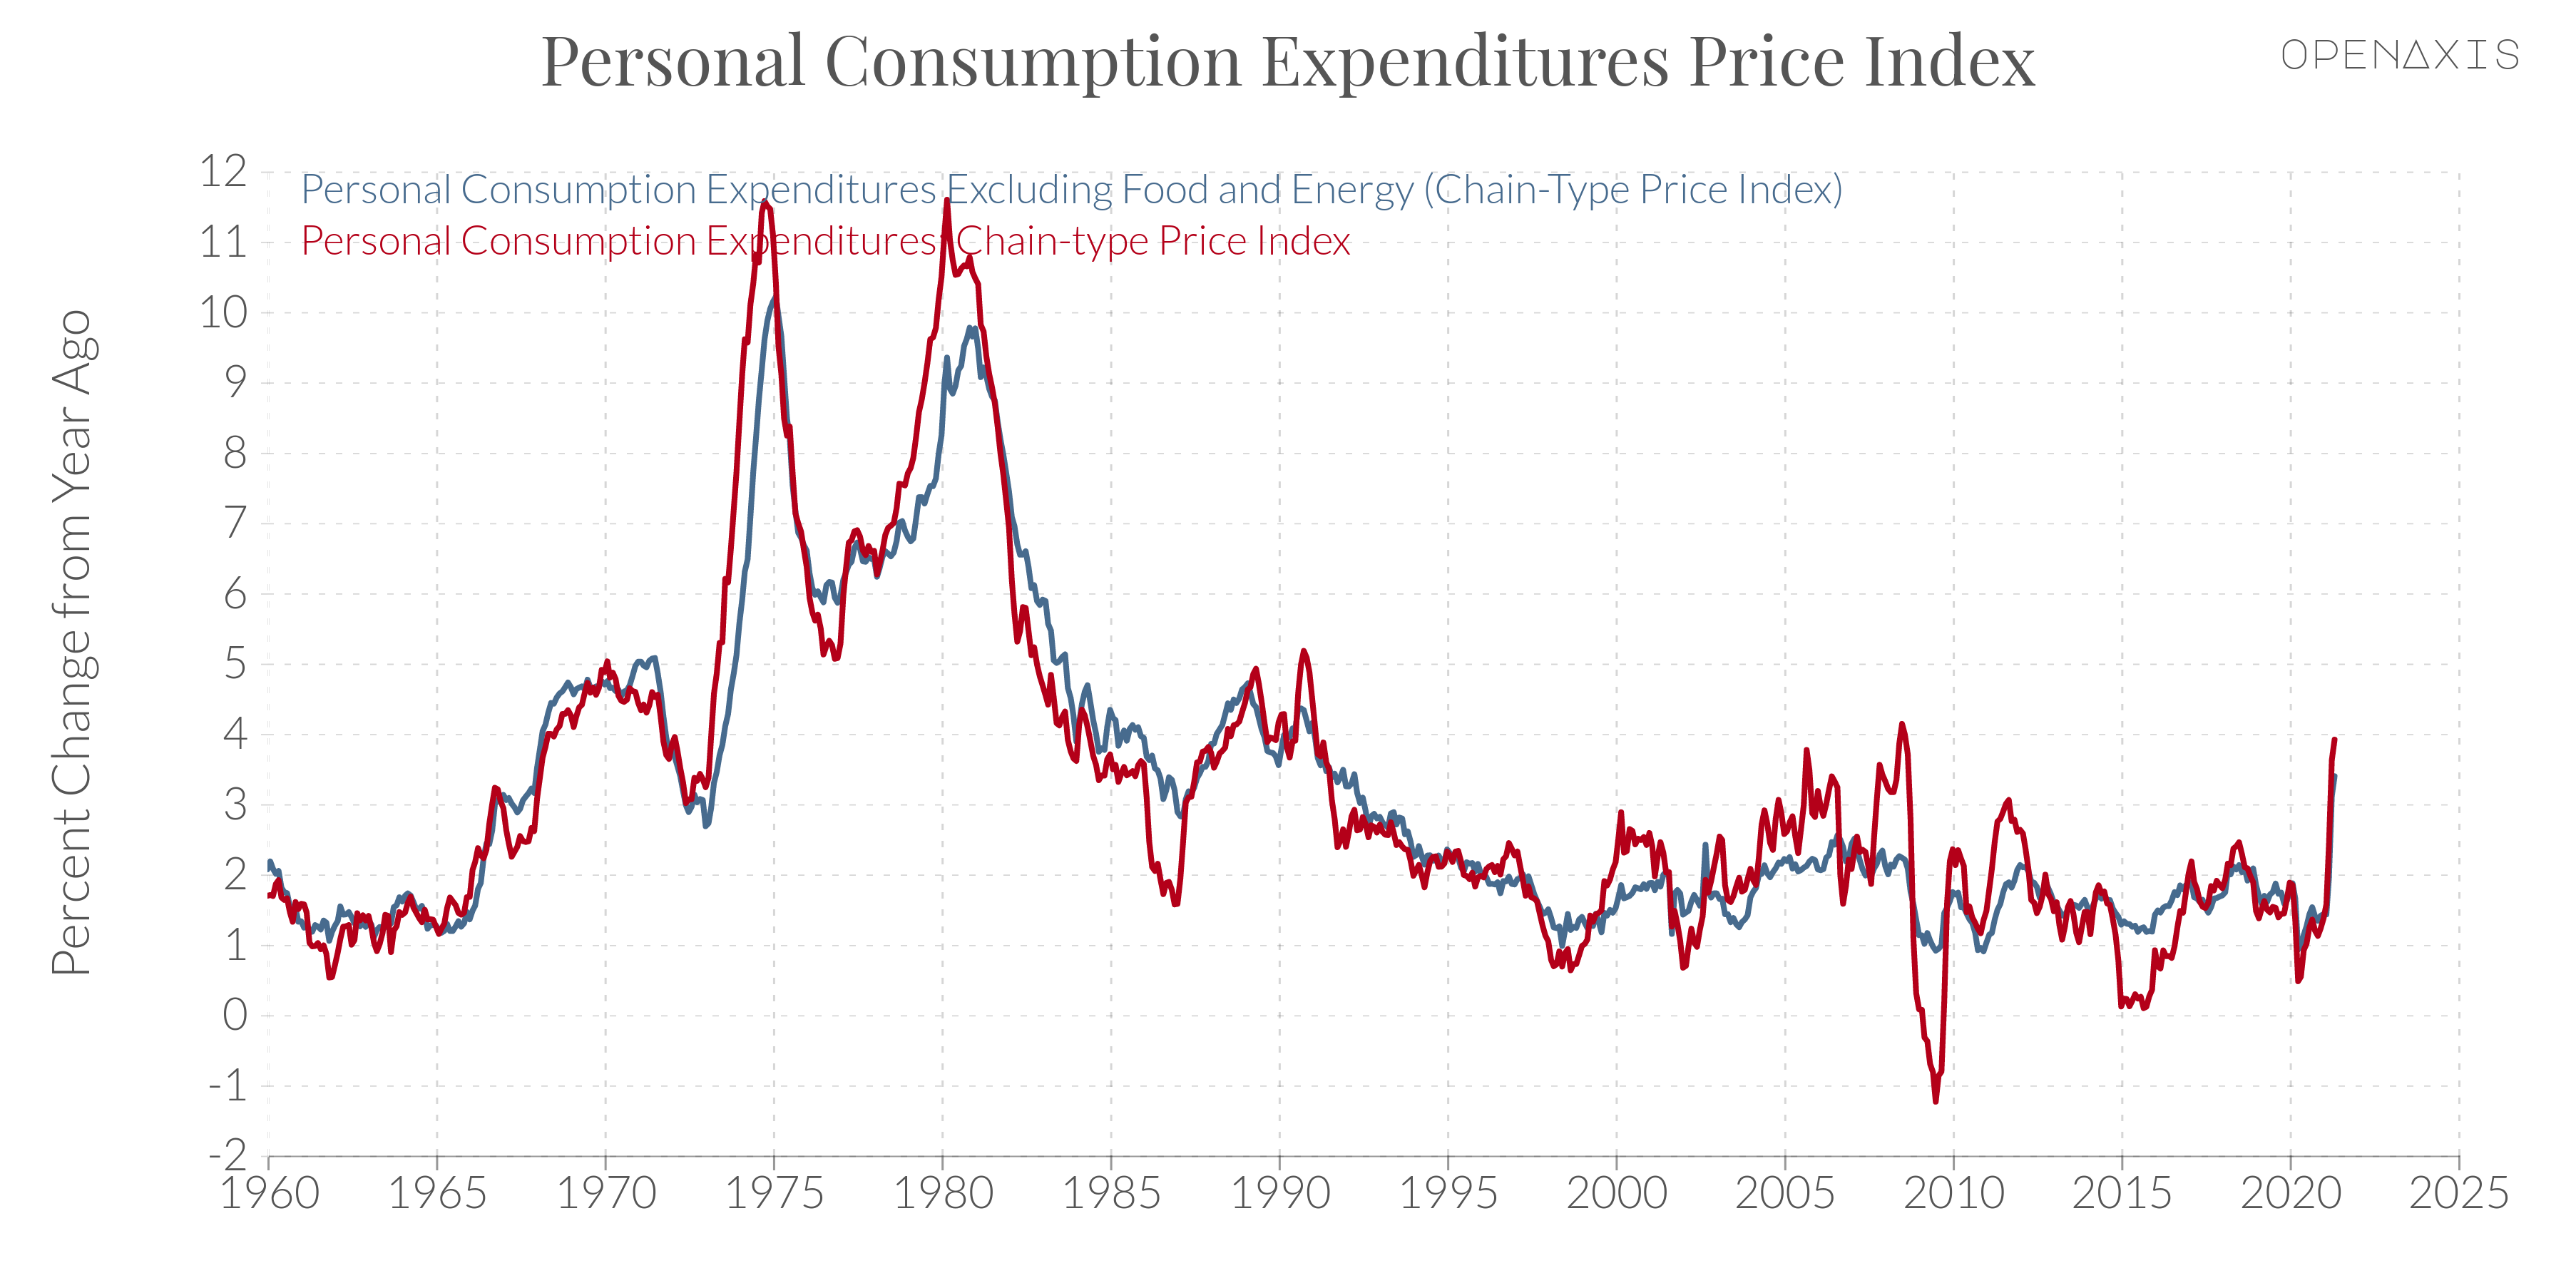 "Personal Consumption Expenditures Price Index"